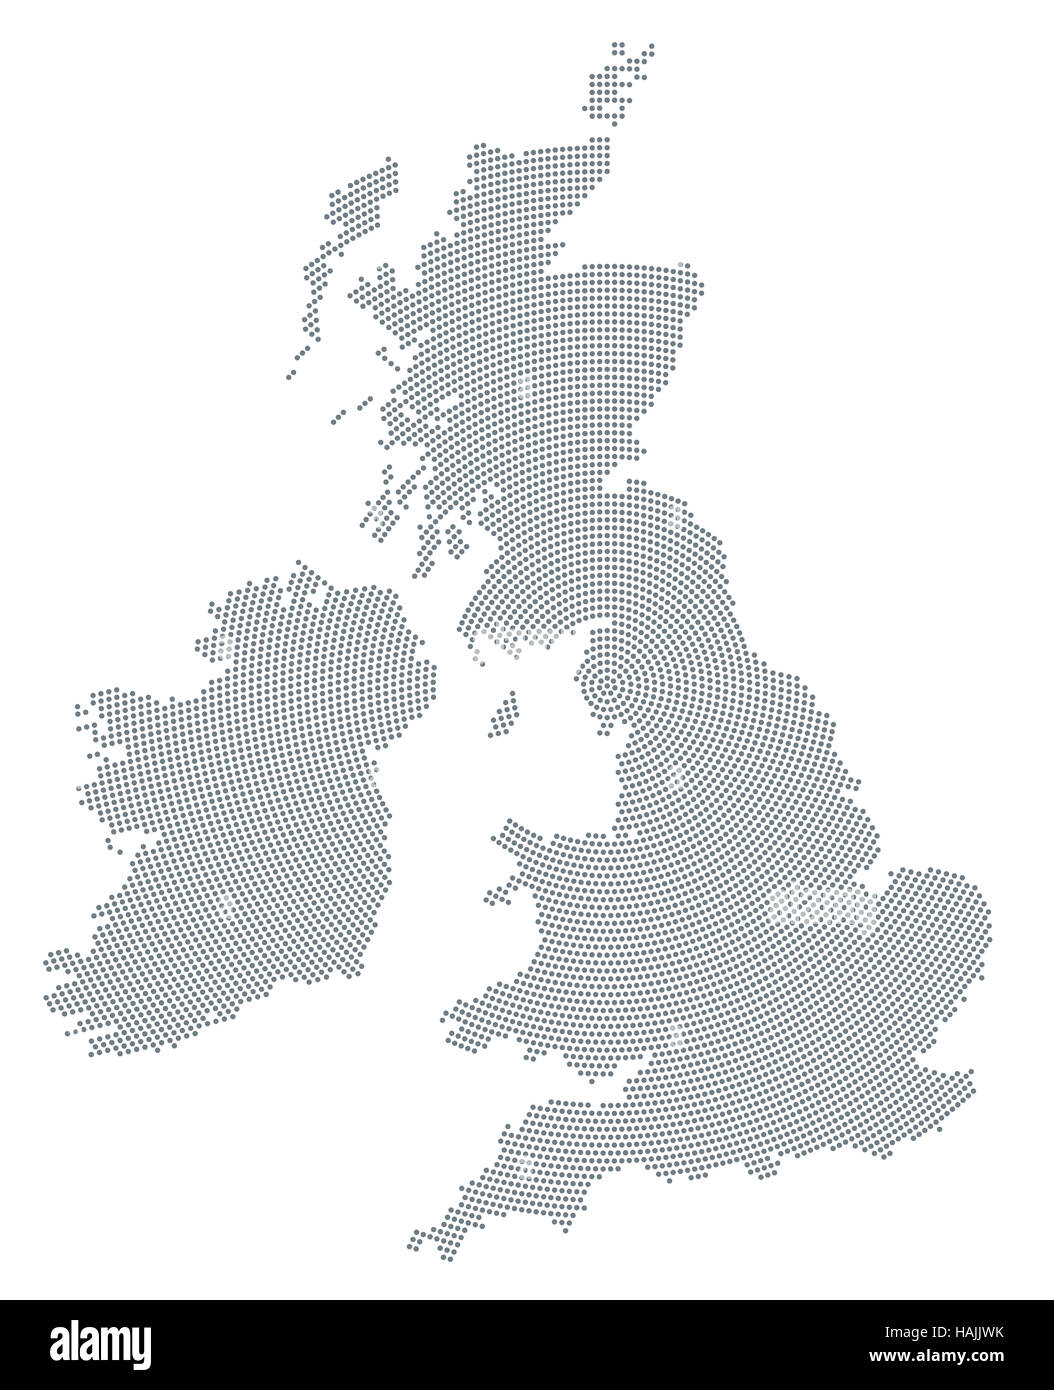 Isole britanniche mappa radiale pattern a punti. Puntini grigi andando dal centro formando le sagome di Irlanda e Regno Unito. Foto Stock